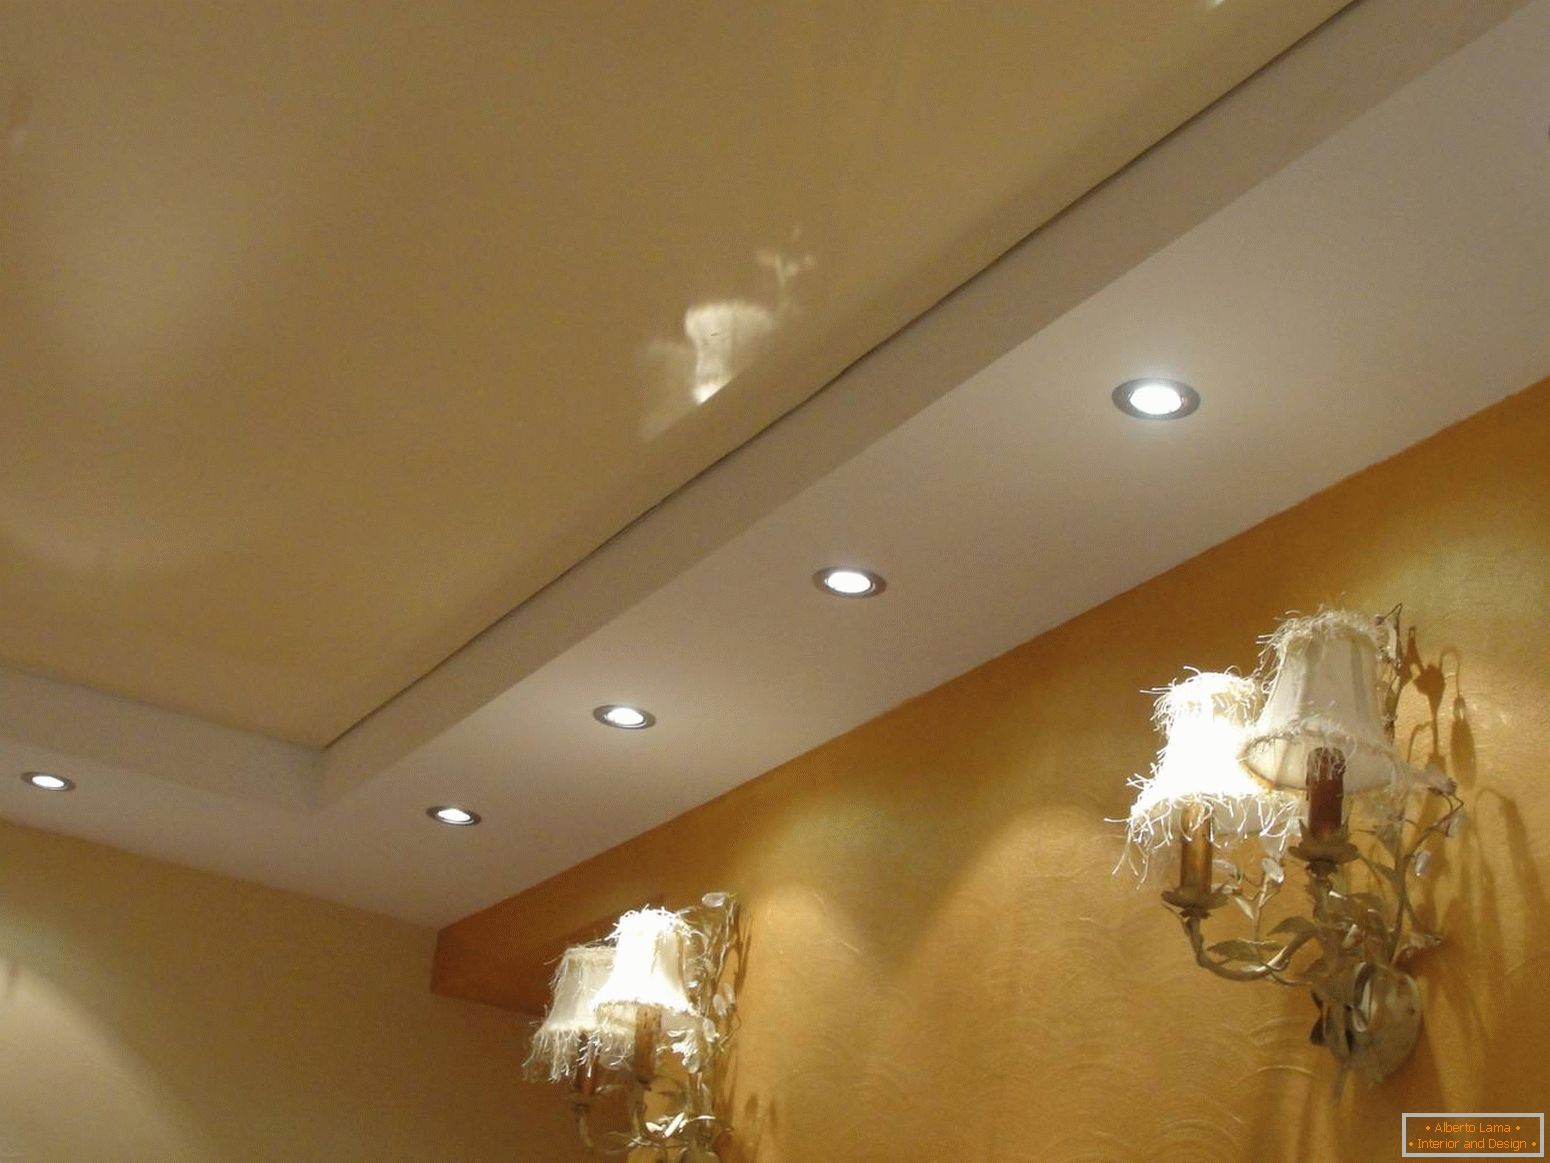 Le plafond est un abat-jour beige avec un éclairage bien choisi.